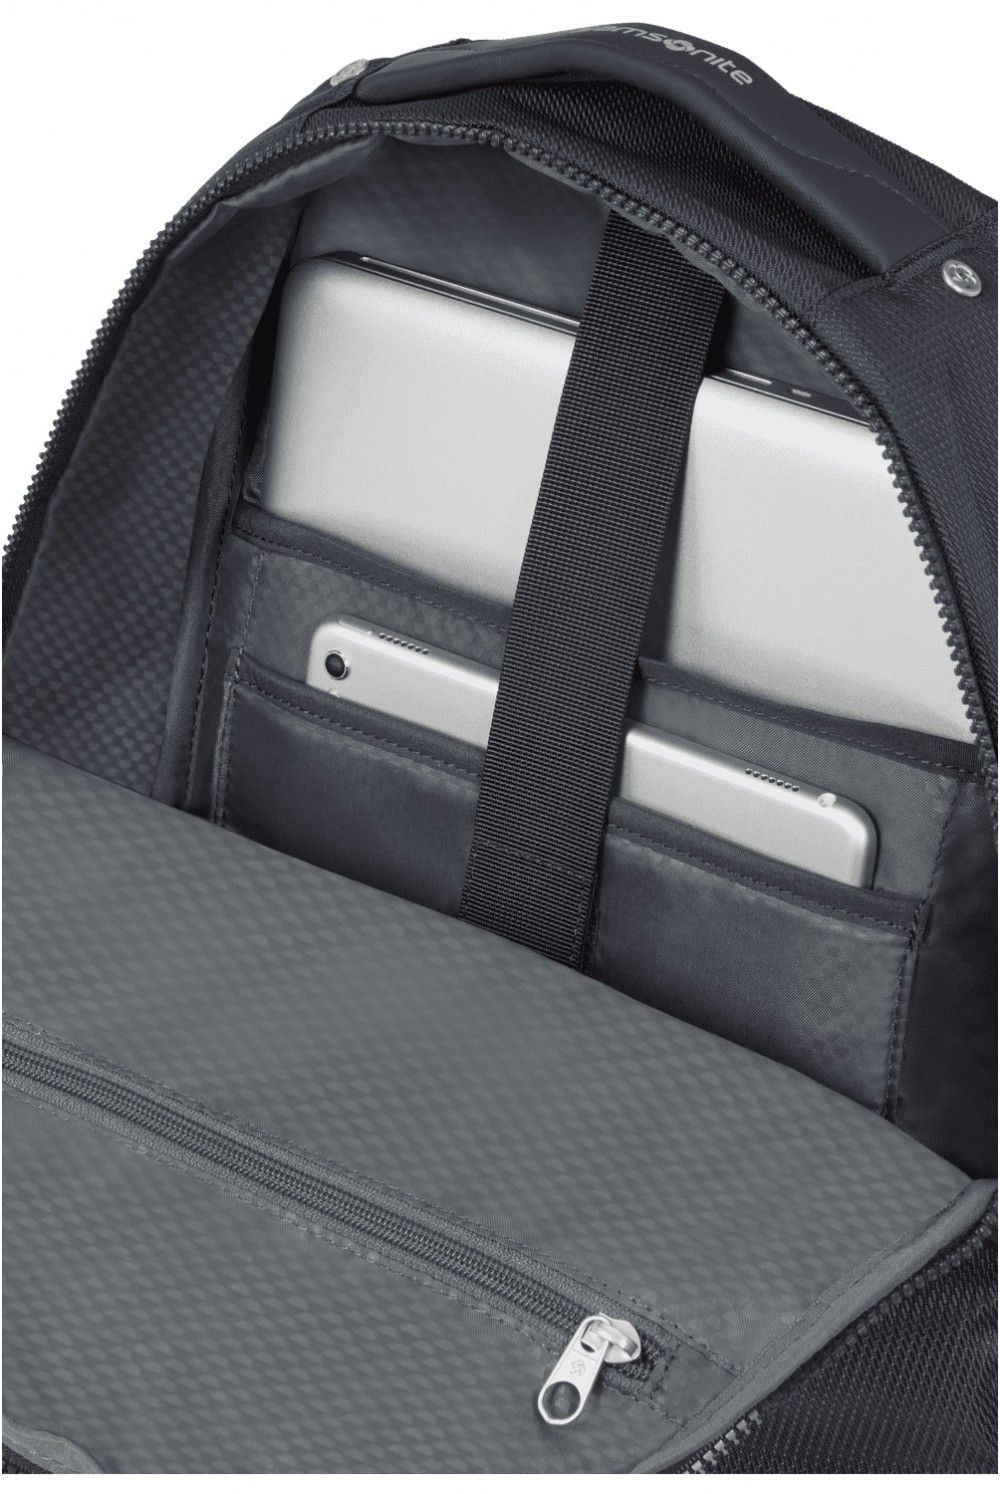 Samsonite sac à dos pour ordinateur portable Midtown 14 pouces